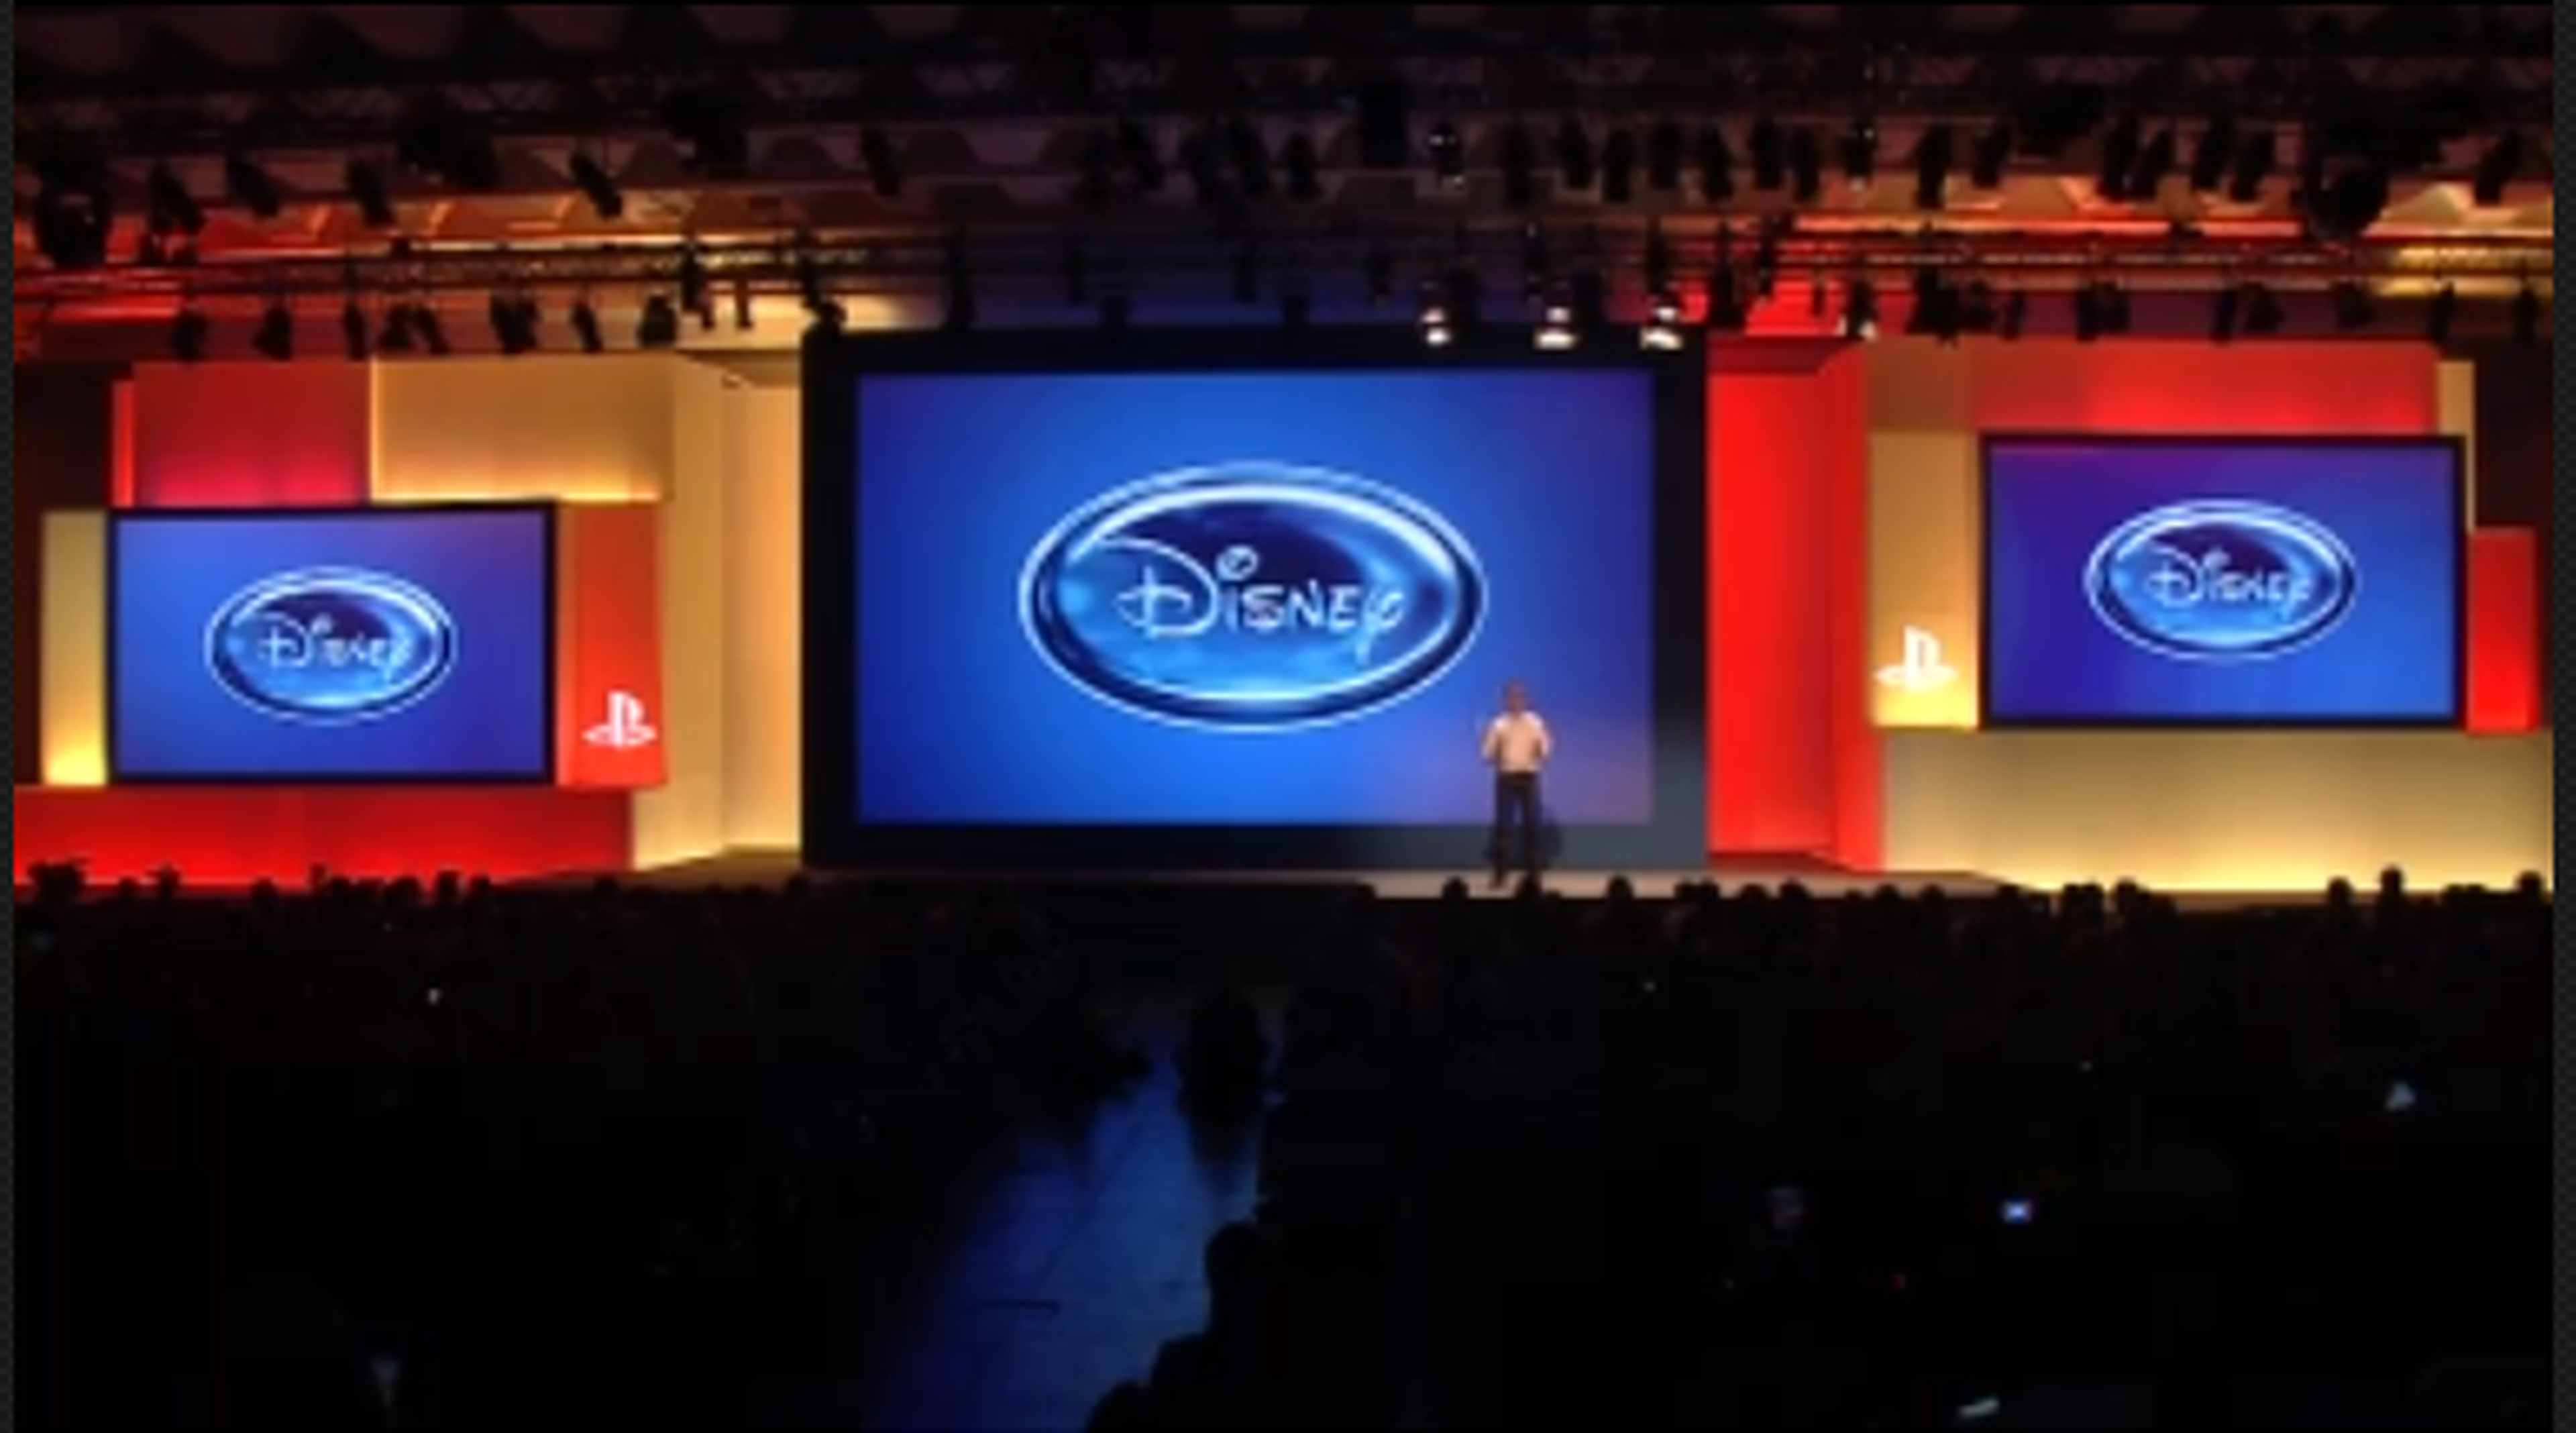 GAMESCOM: Conferencia en directo de Sony